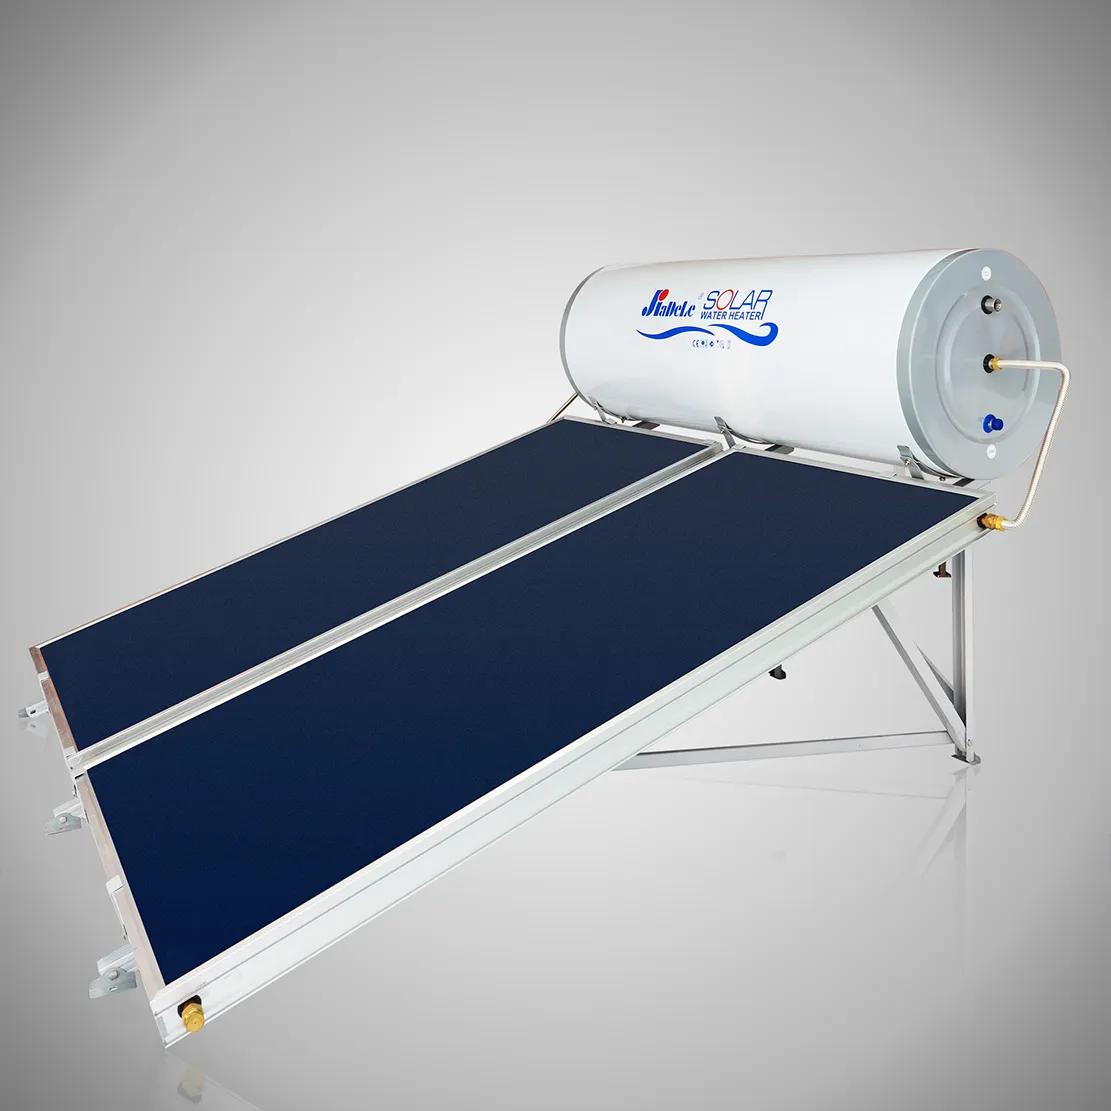 JIADELE 150L calentador système de chauffe-eau solaire maison pannello solare termico plaque plate émaillée chauffe-eau solaire